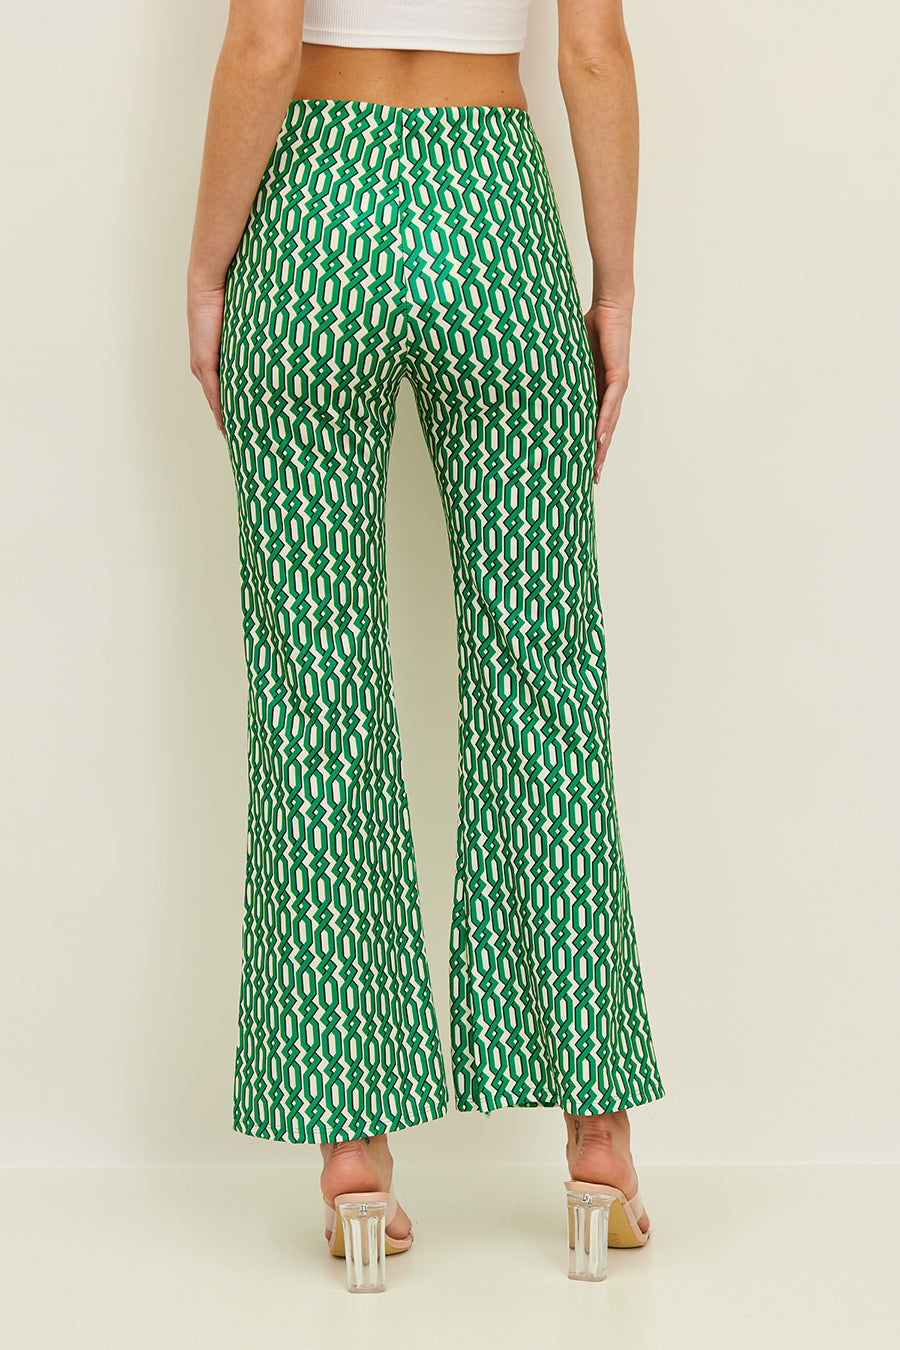 Γυναικείο παντελόνι Ranya, Πράσινο 3